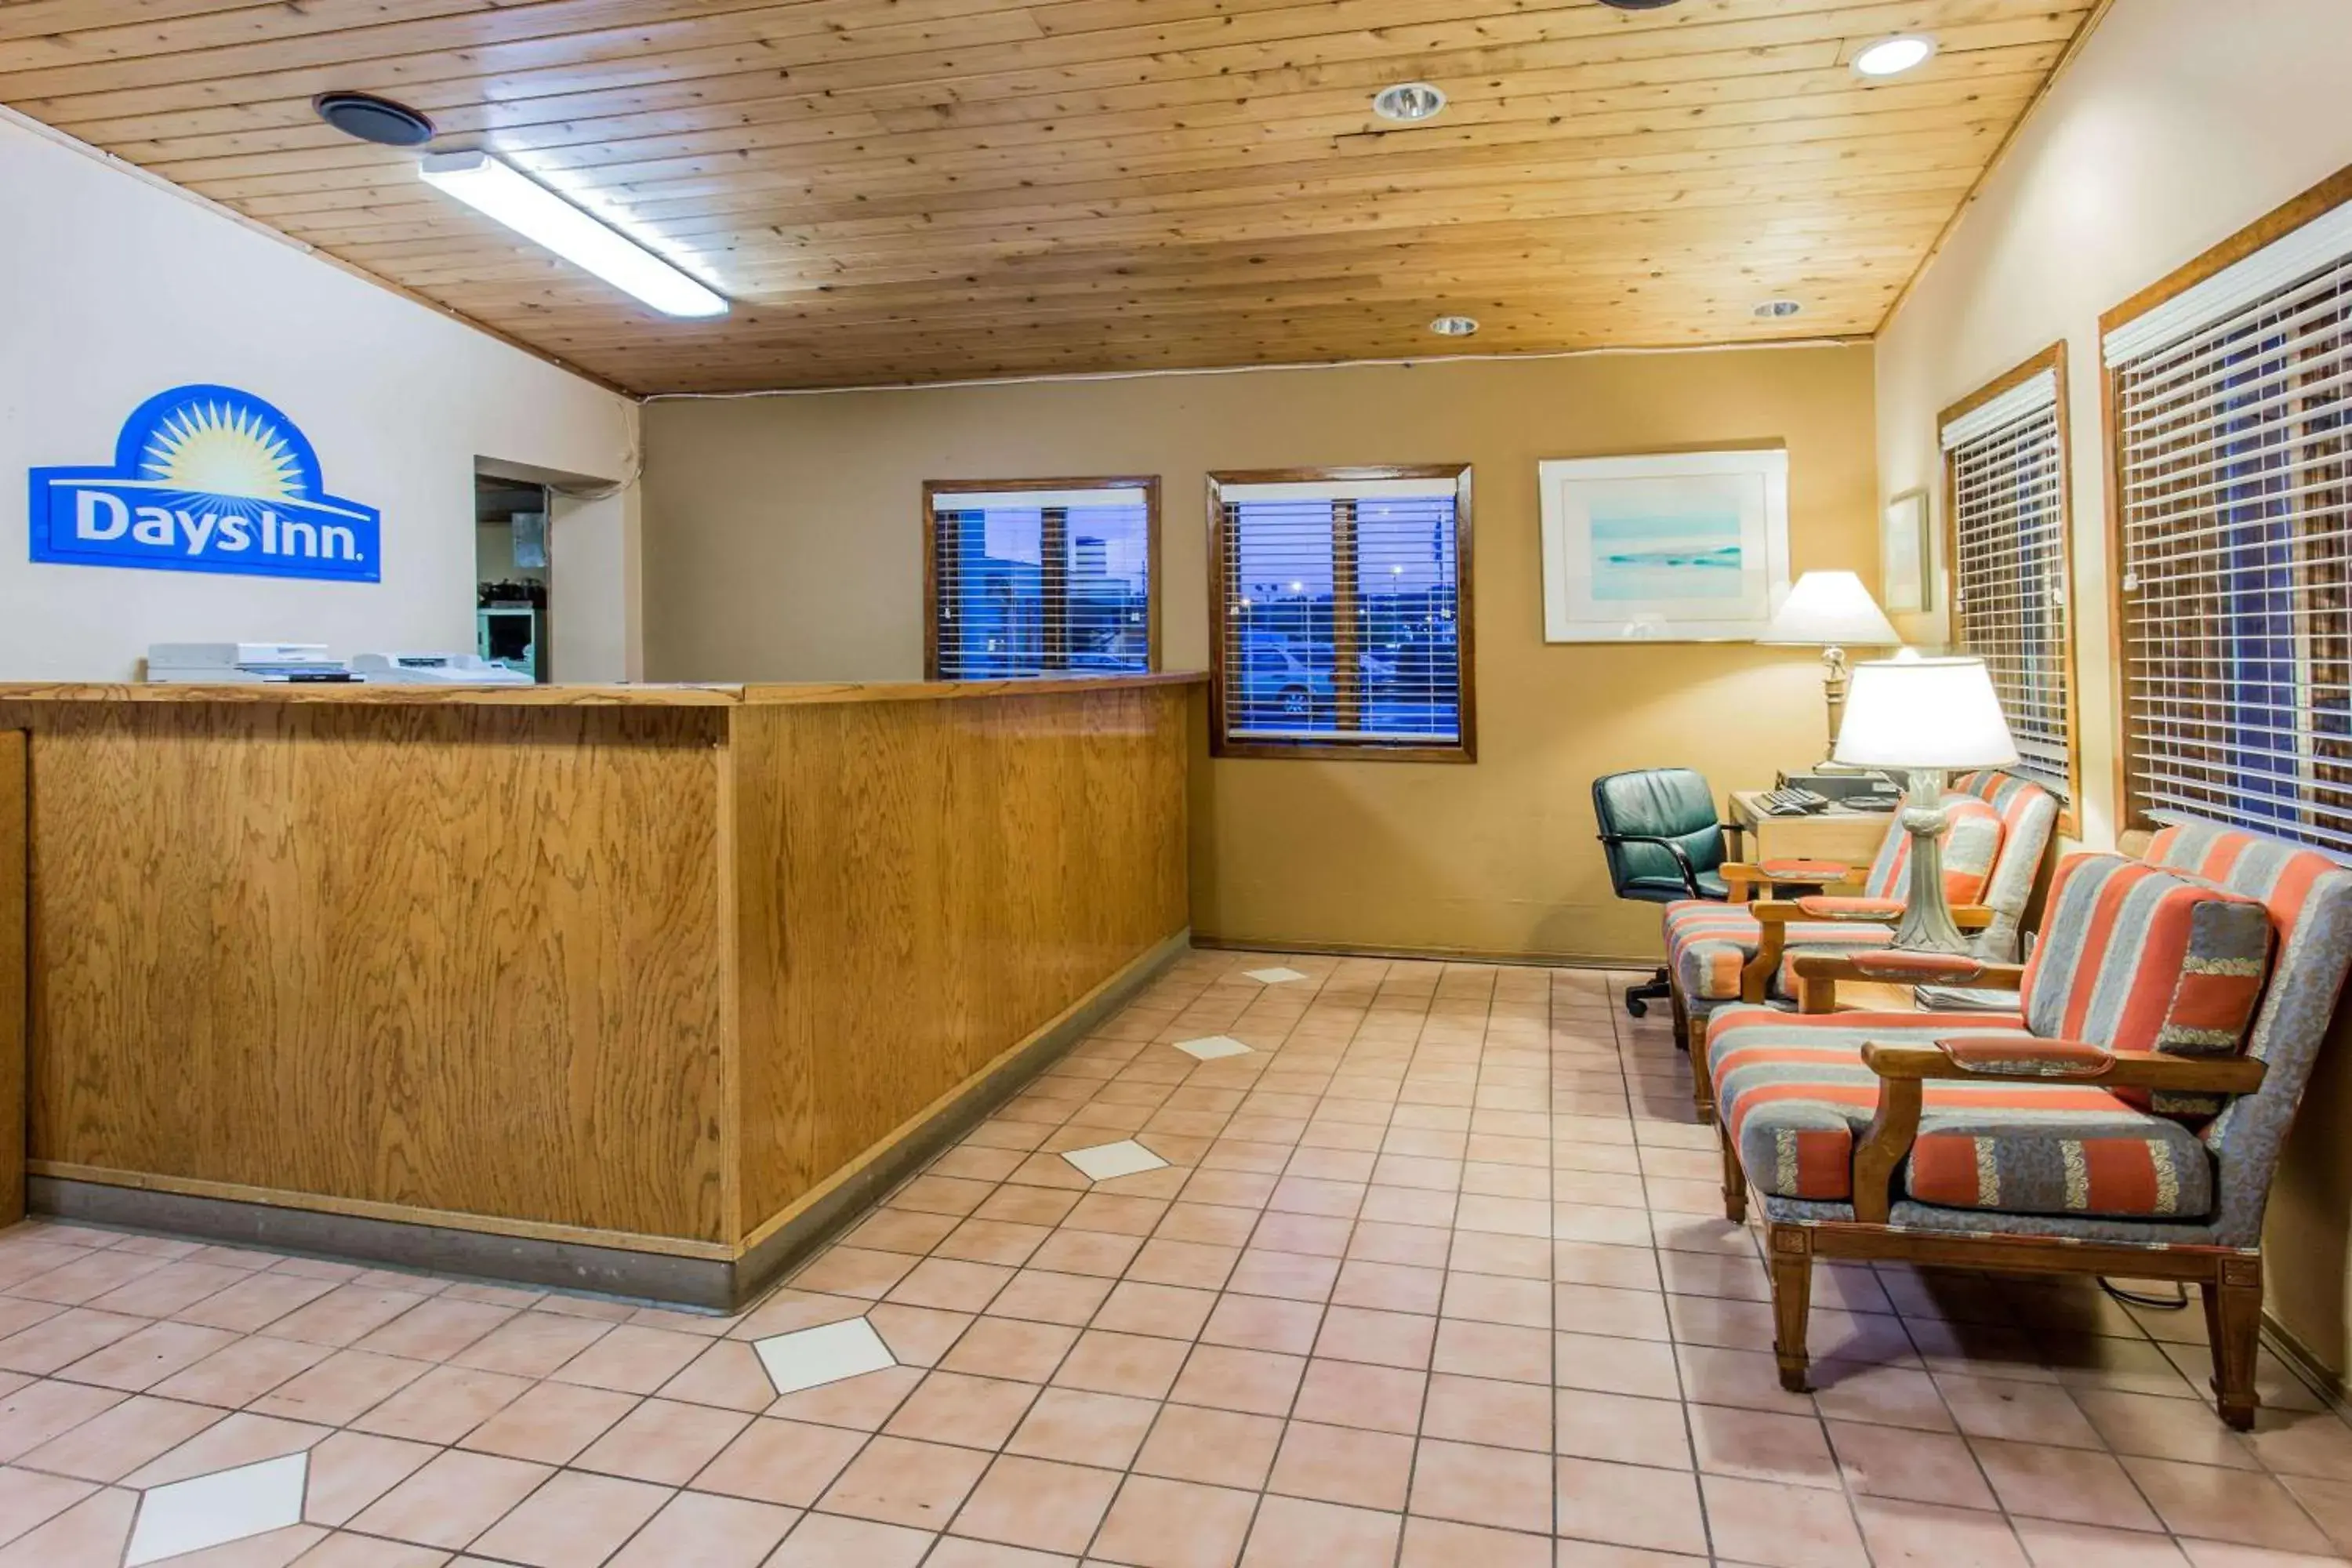 Lobby or reception, Lobby/Reception in Days Inn by Wyndham West Allis/Milwaukee